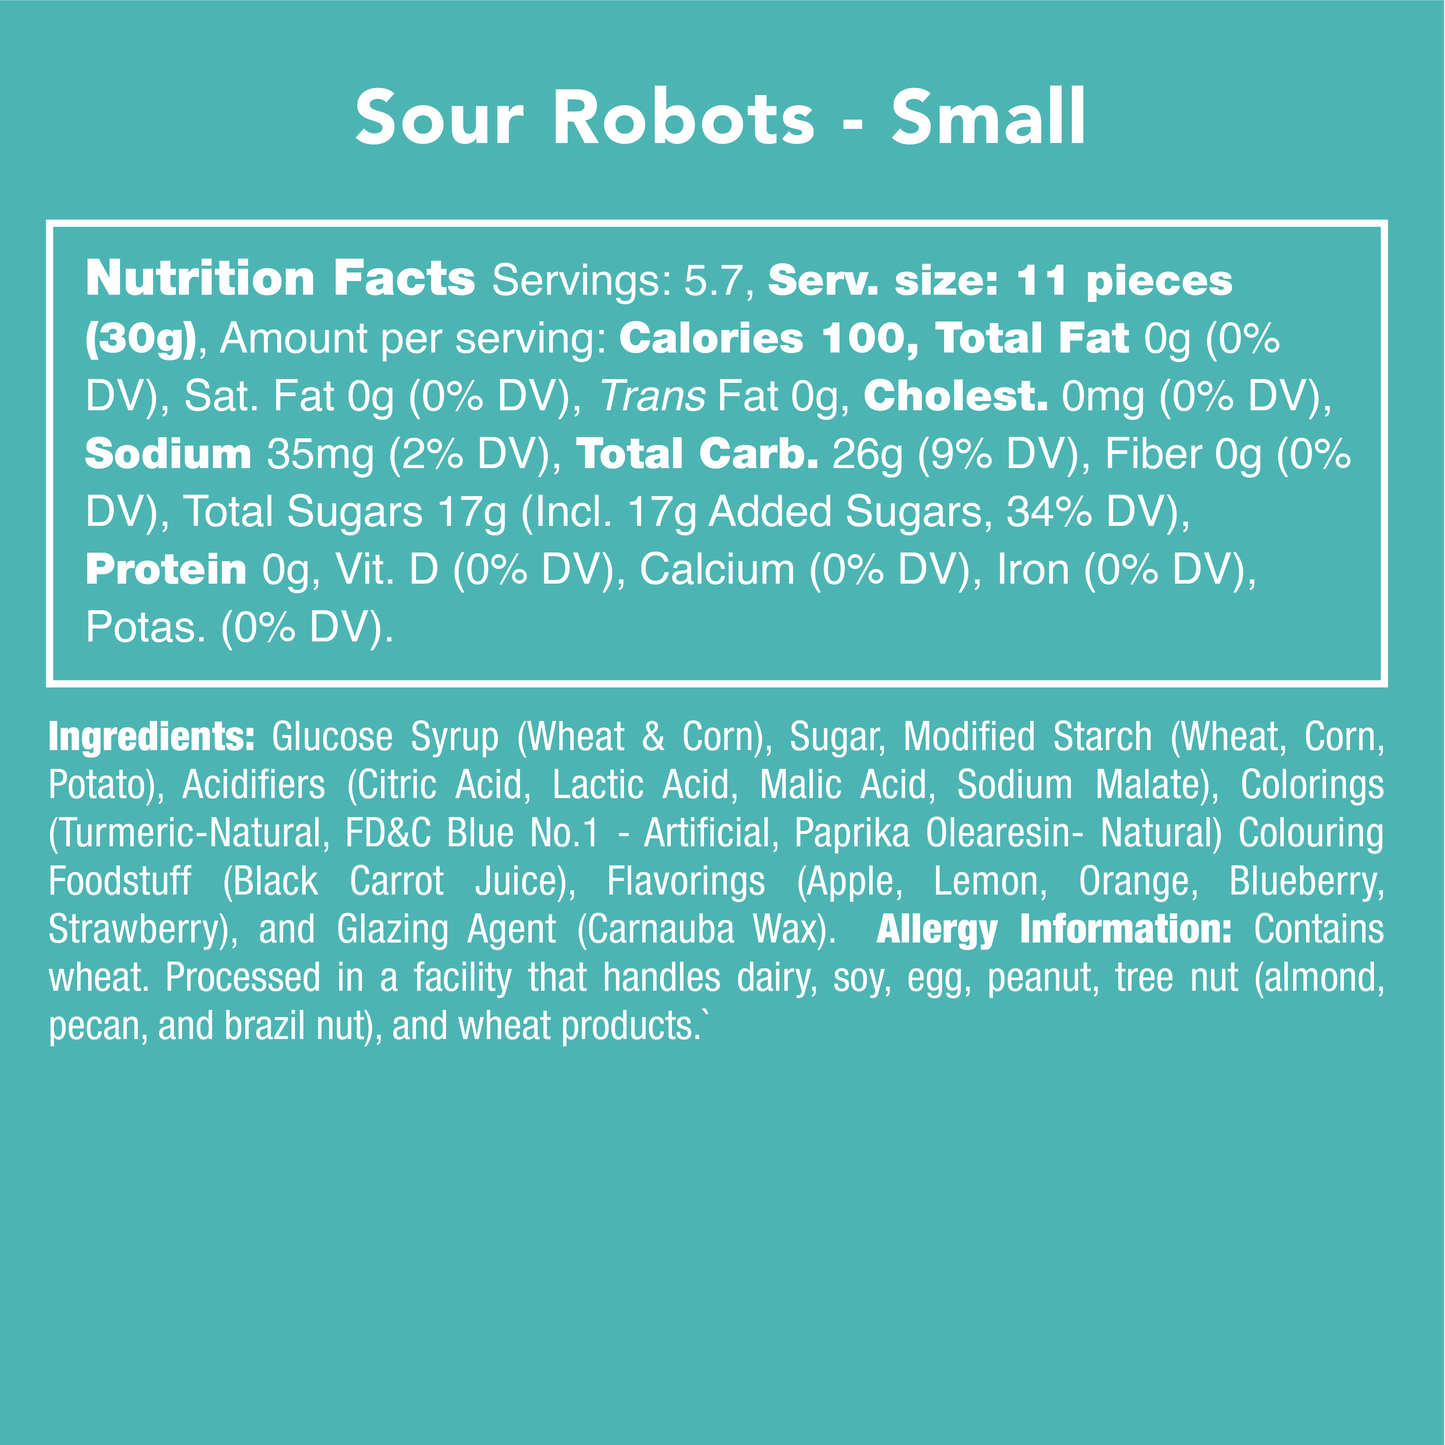 Sour Robots Candy